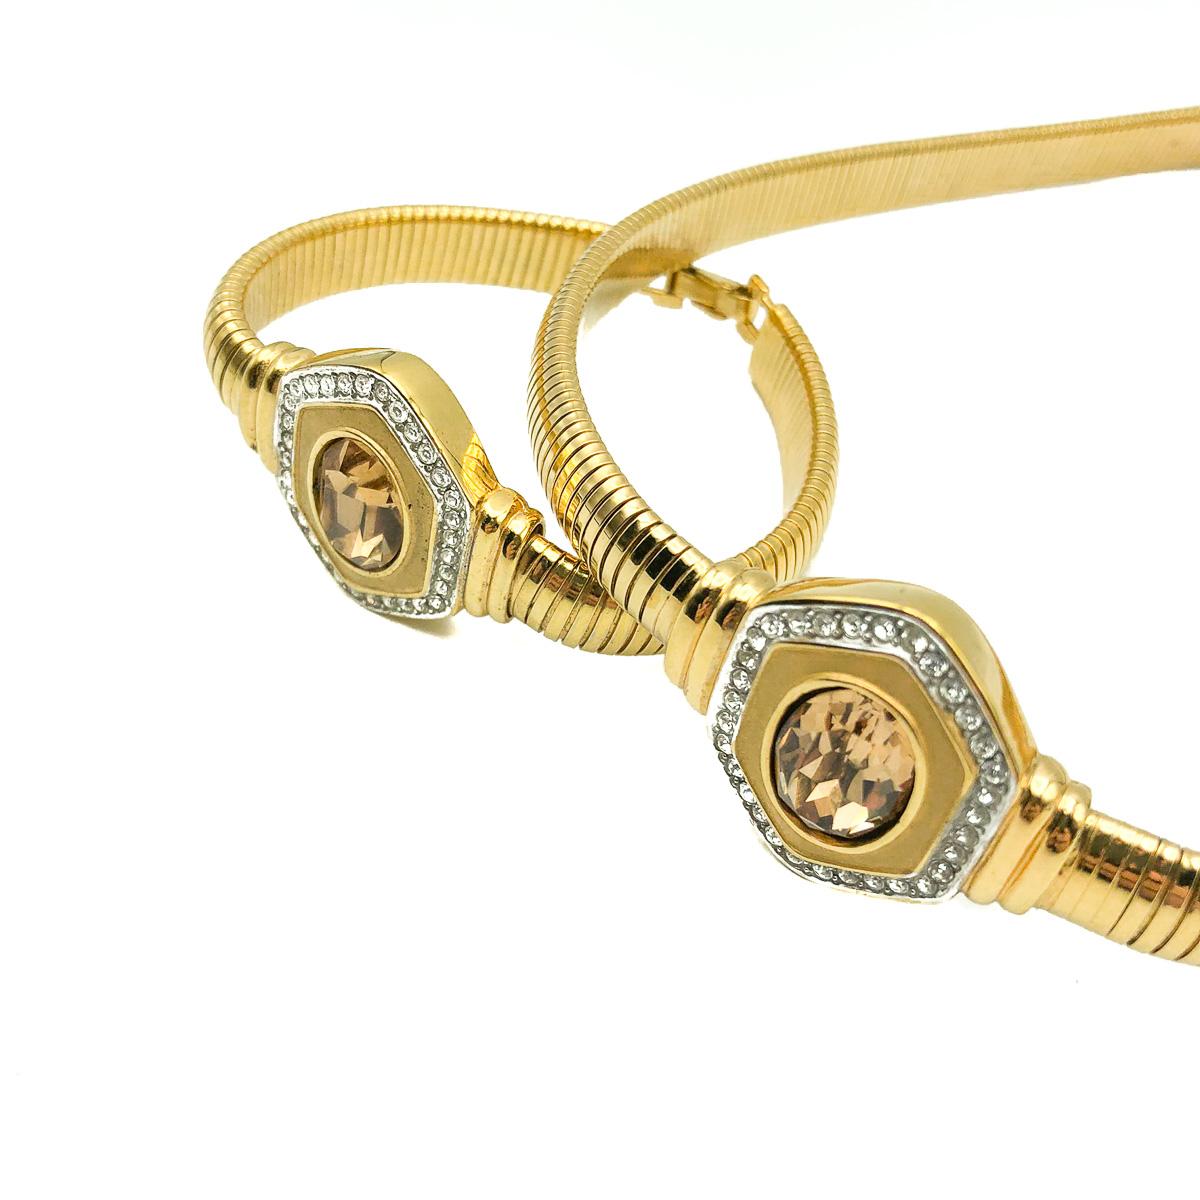 Eine göttliche Vintage Lanvin Halskette und Armband. Aus vergoldetem Metall und mit Kristallen besetzt. Die Kette ist mit dem Lanvin-Logo-Anhänger versehen.  In sehr gutem Vintage-Zustand. Unterschrieben. Halskette ca. 38 - 42 cm und Armband 18 cm. 